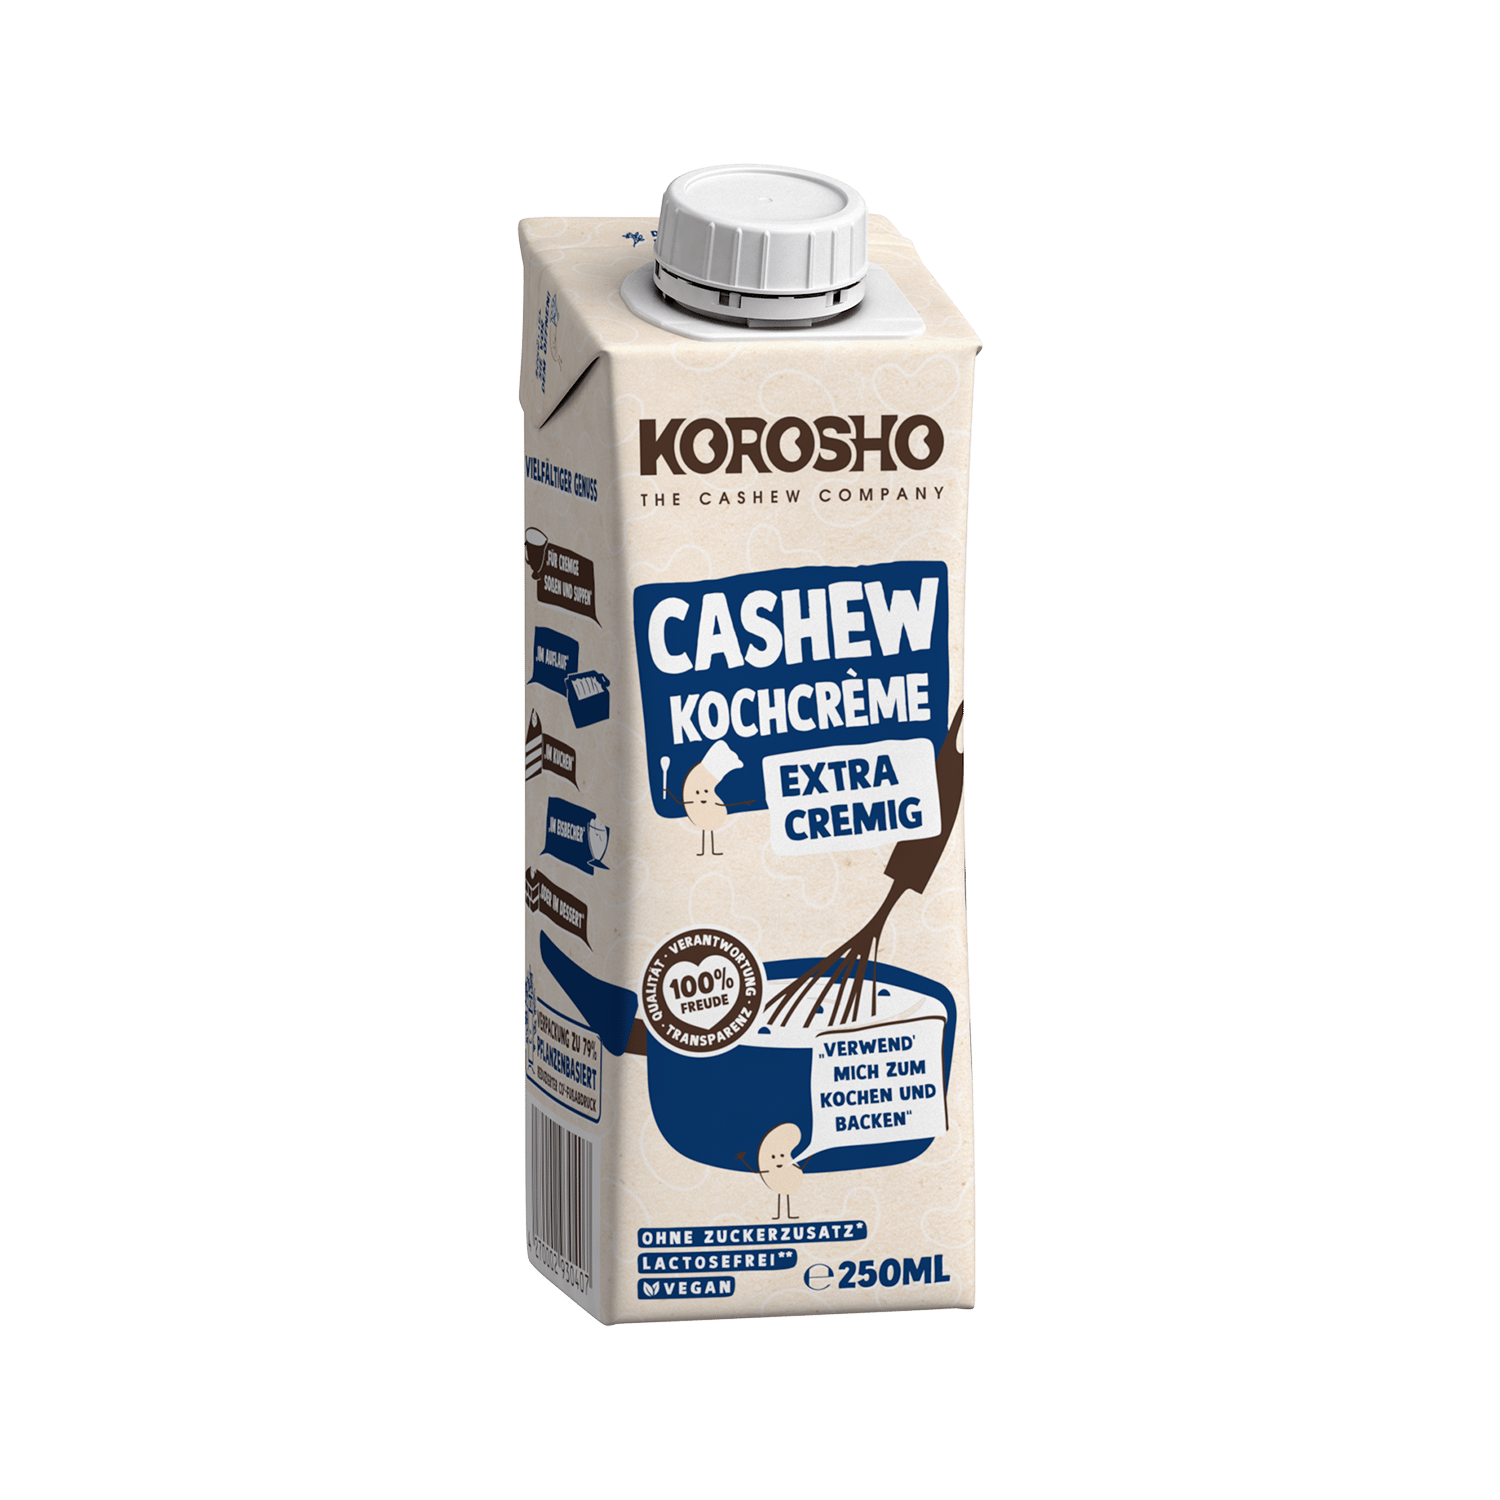 Cashew Kochcrème, 250ml